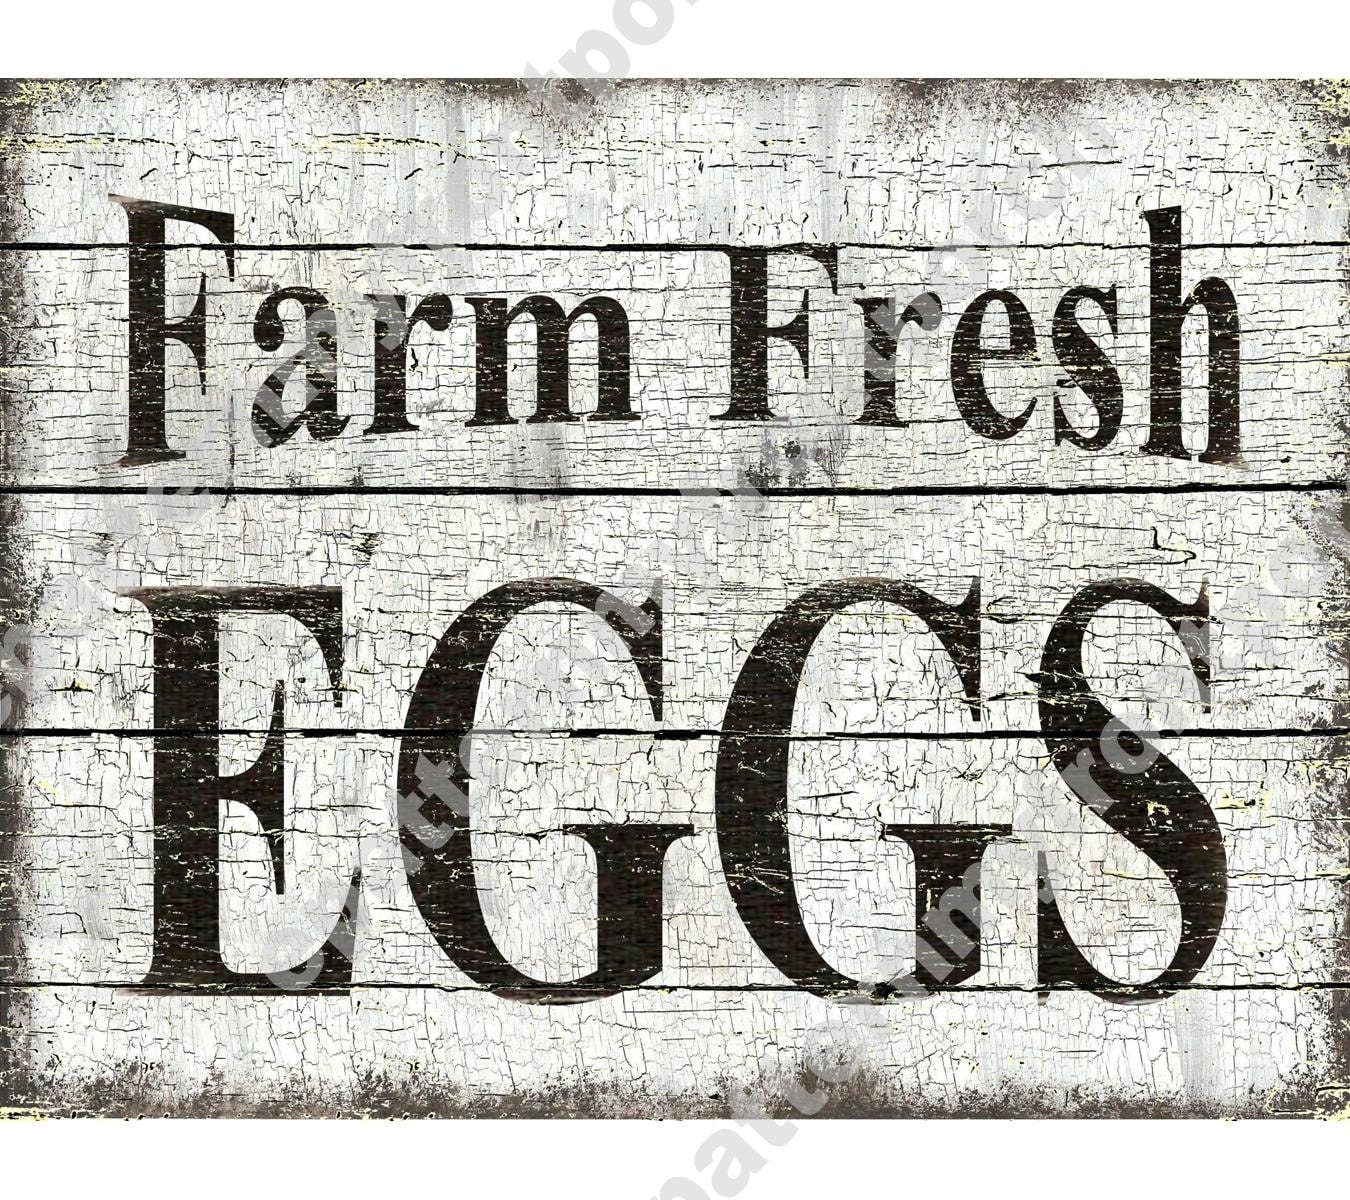 Printable Farm Fresh Eggs Sign - Printable World Holiday